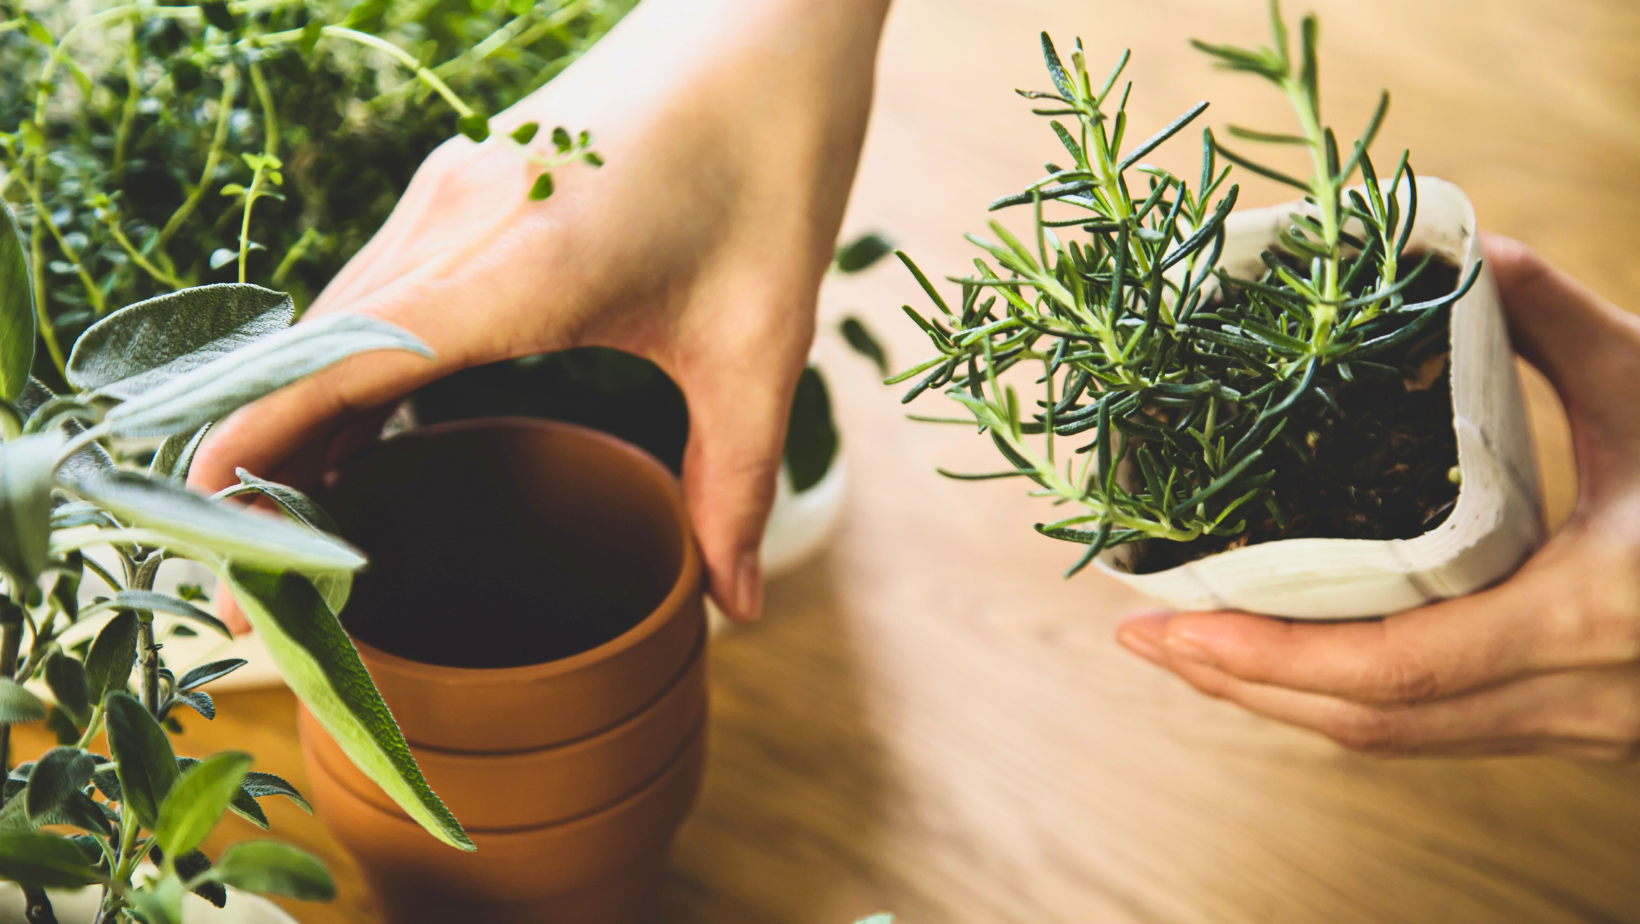 טיפוח אדנית צמחי תבלין בבית: דרך נהדרת לשיפור מצב הרוח, לבריאות ולנשמה